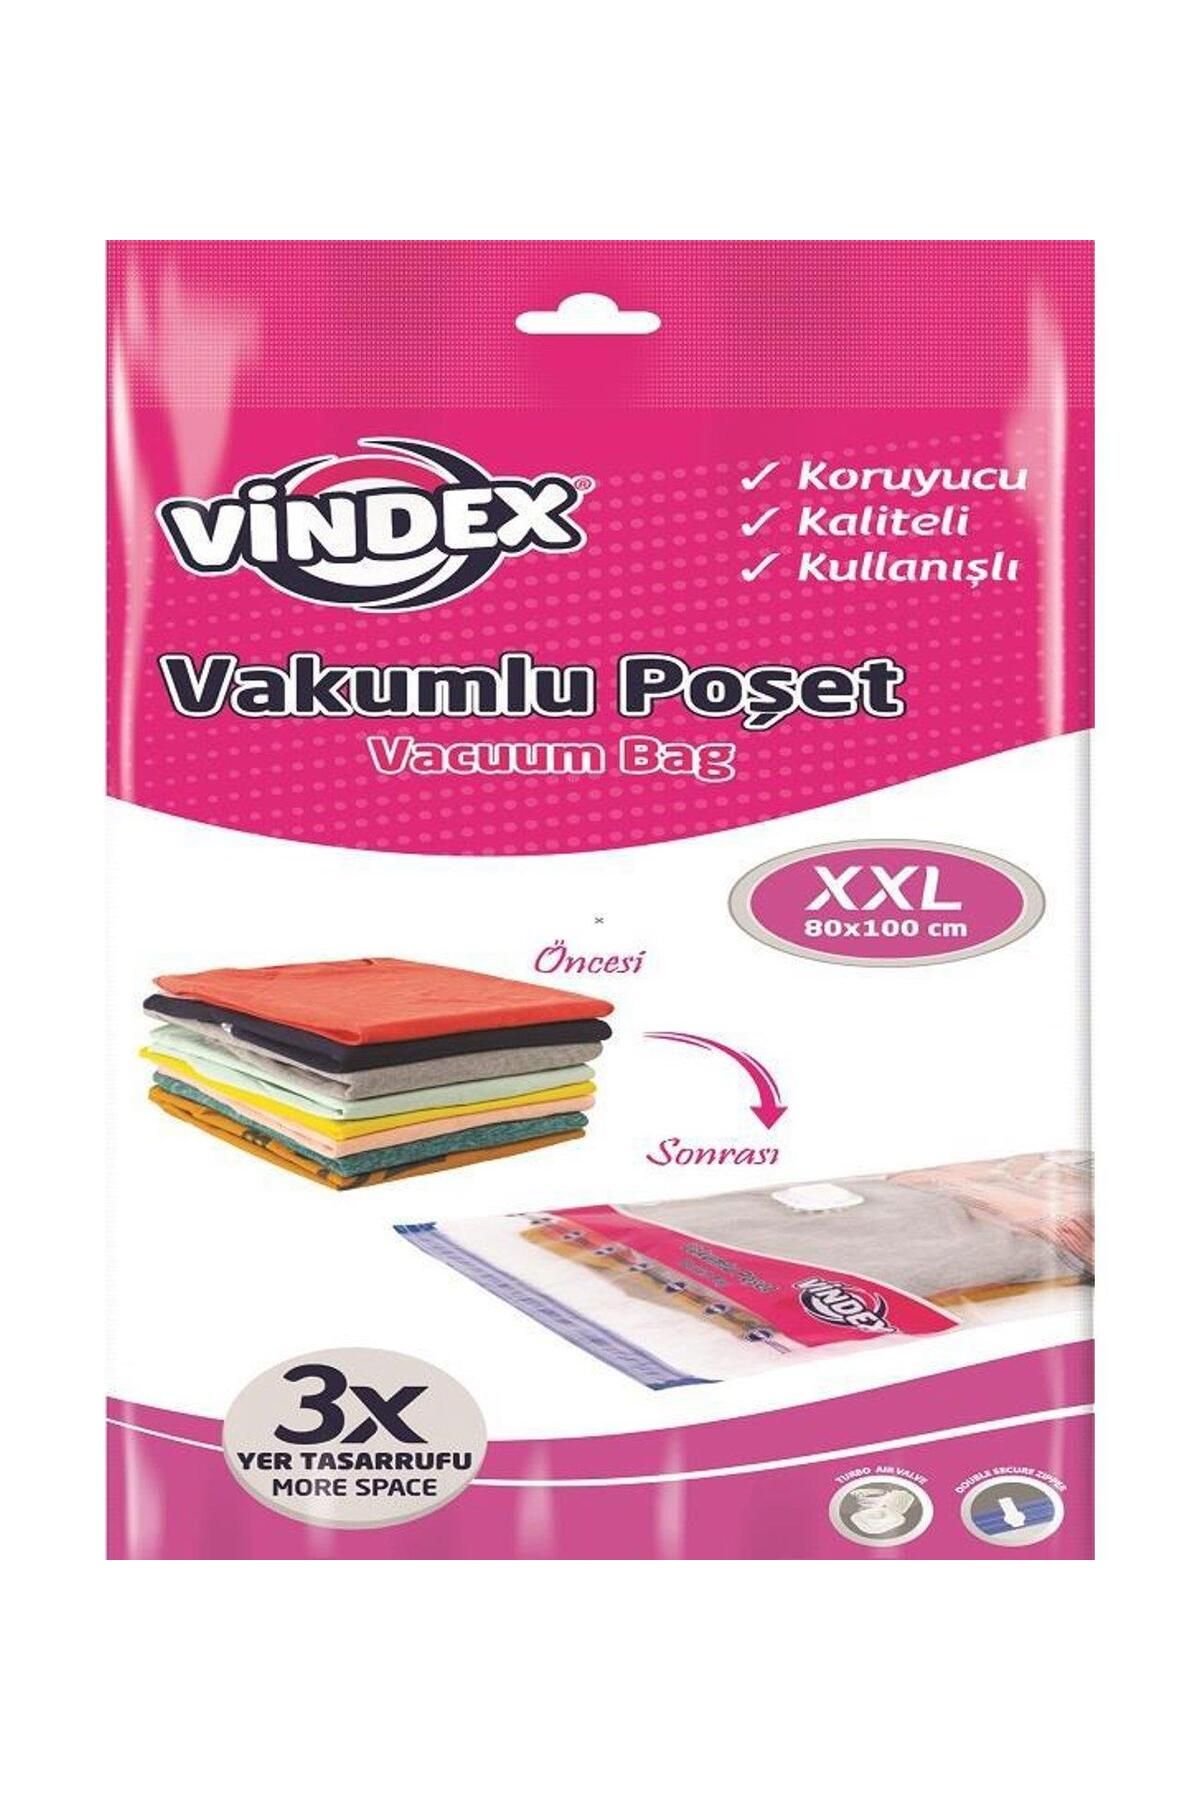 Vindex Vakumlu Giyisi Yastık Yorgan Saklama Torbası Poşeti Hurç - Xx Large - 80x100 Cm. -1 Paket